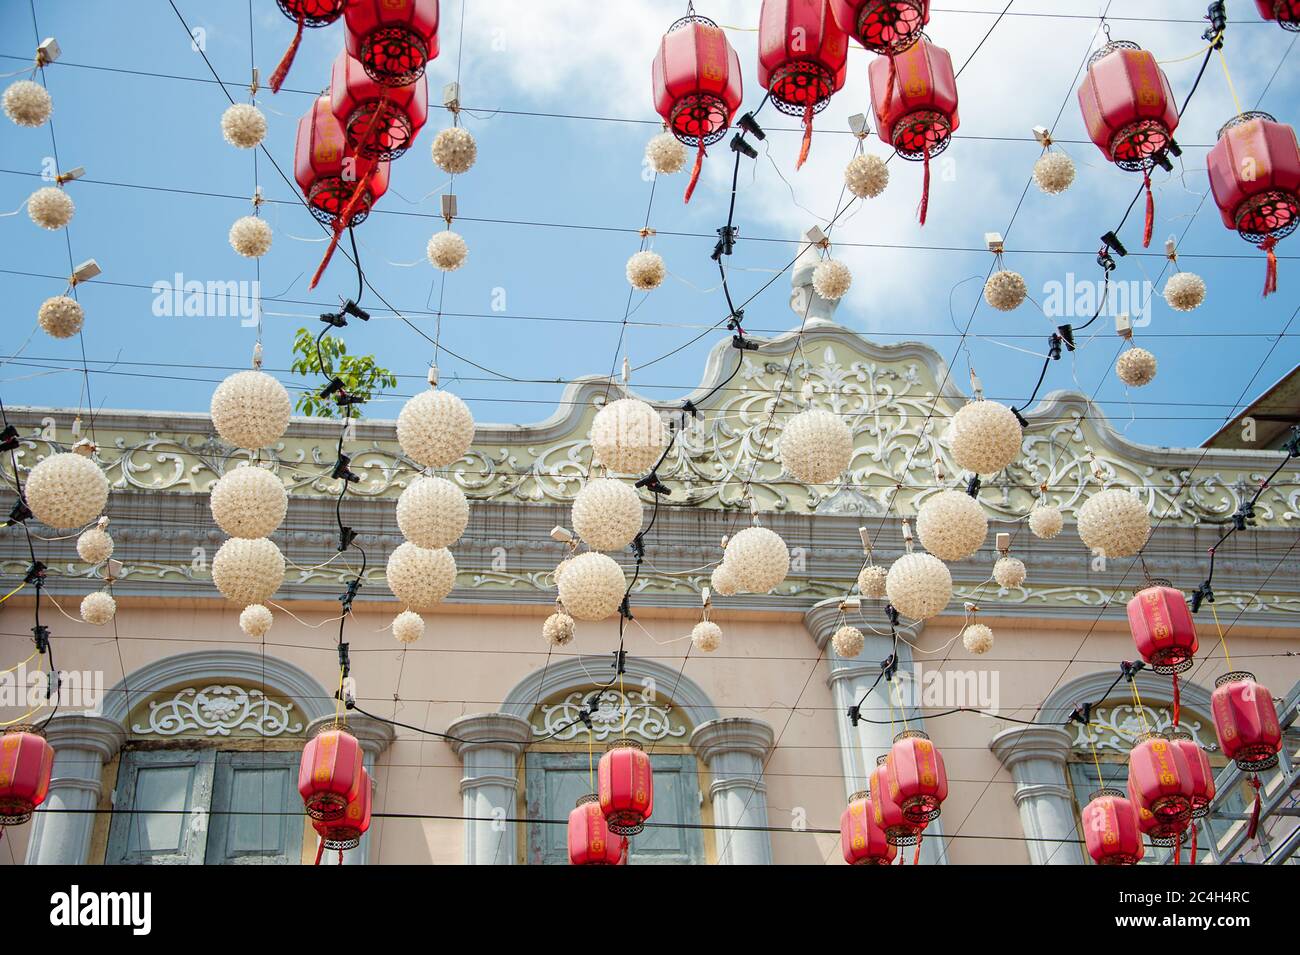 Kuala Terengganu - 2018 février : lanternes chinoises rouges suspendues à l'extérieur du bâtiment historique colonial de Chinatown. Banque D'Images